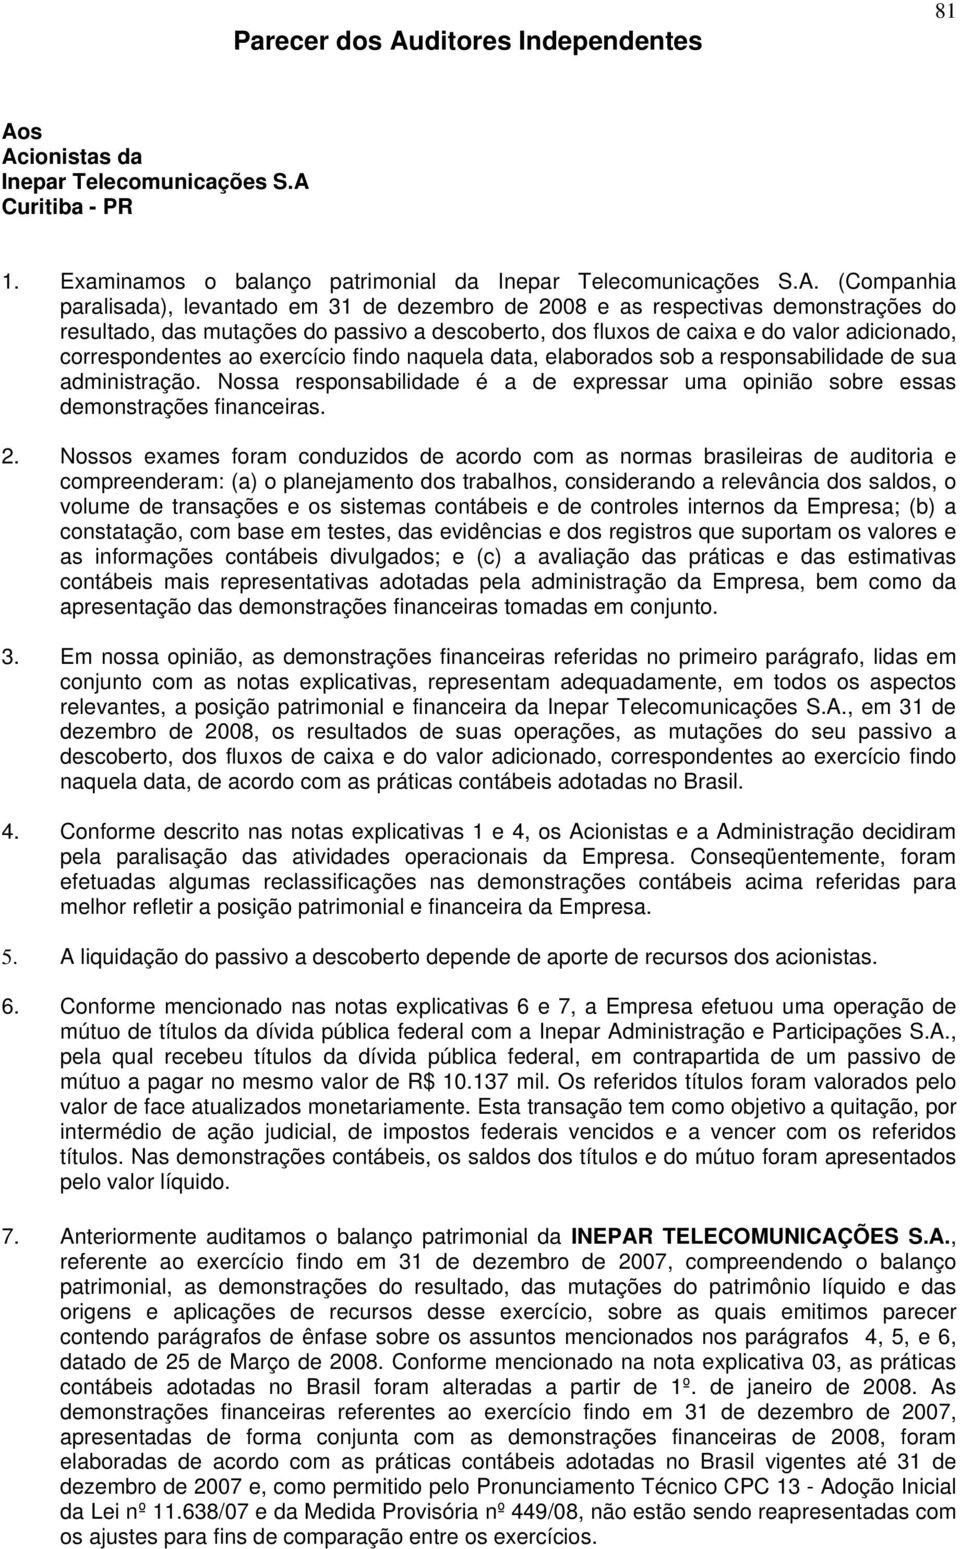 s Acionistas da Inepar Telecomunicações S.A Curitiba - PR 1. Examinamos o balanço patrimonial da Inepar Telecomunicações S.A. (Companhia paralisada), levantado em 31 de dezembro de 2008 e as